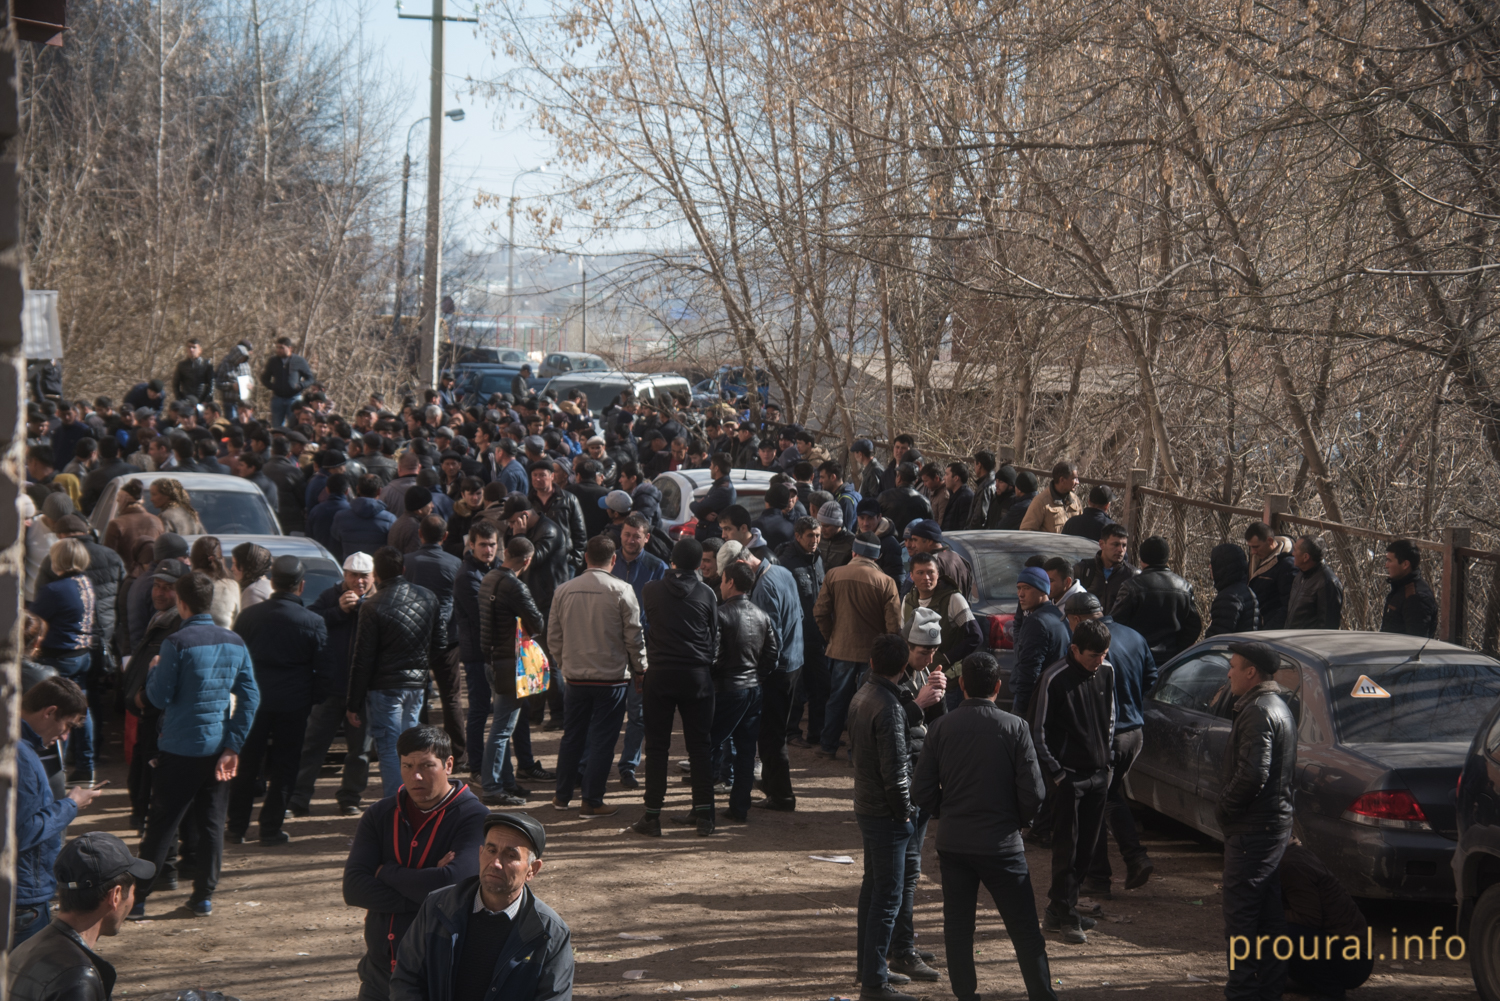 Толпы мигрантов на улице Уфы пугают горожан: Proural выяснил, в чем дело